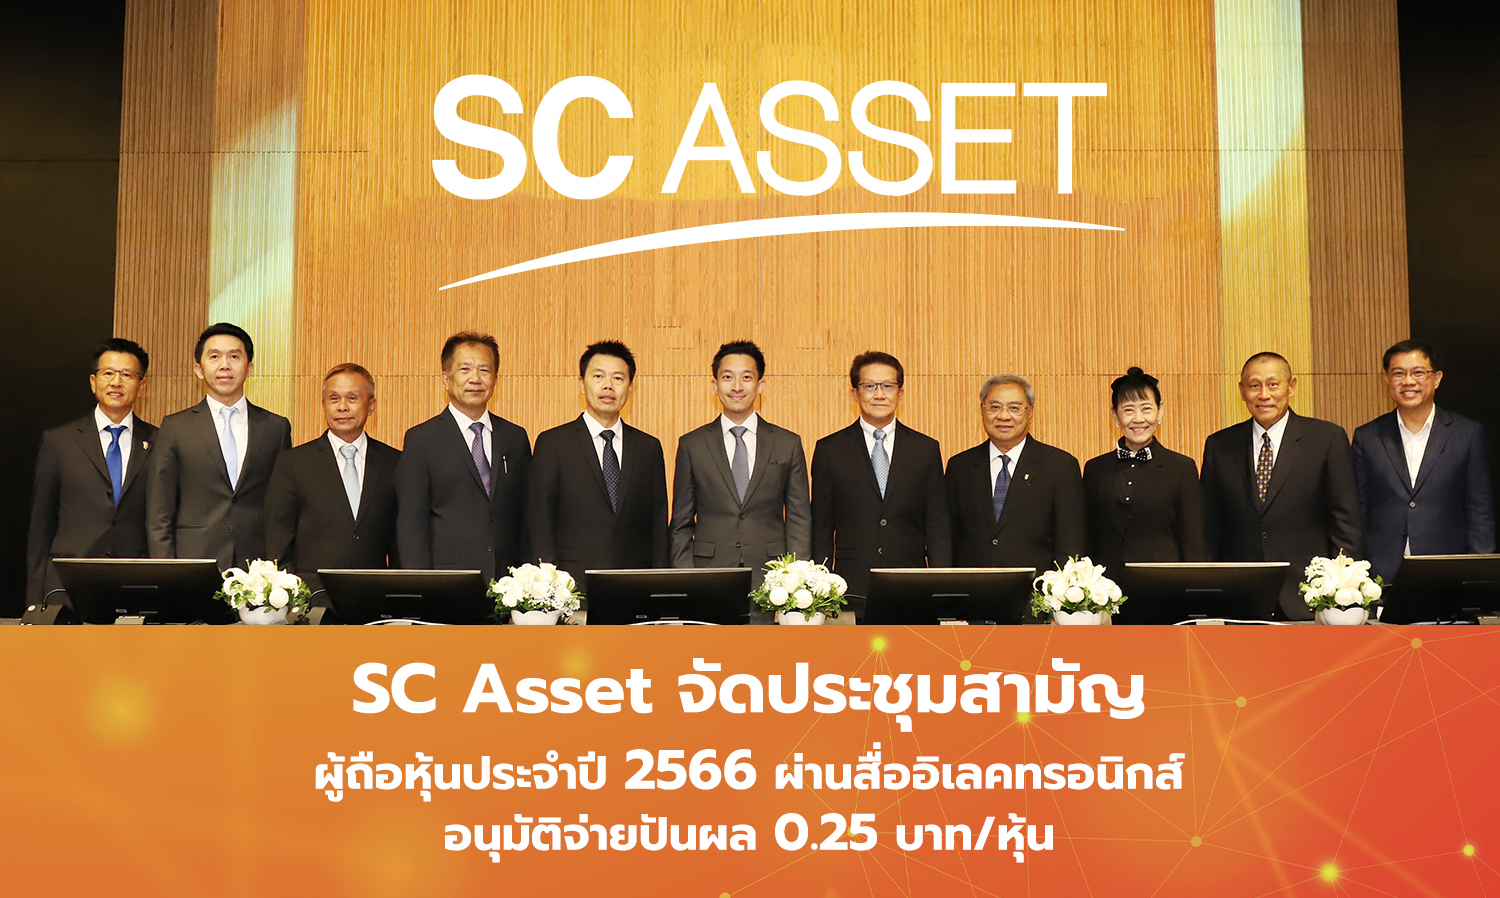 SC Asset จัดประชุมสามัญผู้ถือหุ้นประจำปี 2566 ผ่านสื่ออิเลคทรอนิกส์ อนุมัติจ่ายปันผล 0.25 บาท/หุ้น